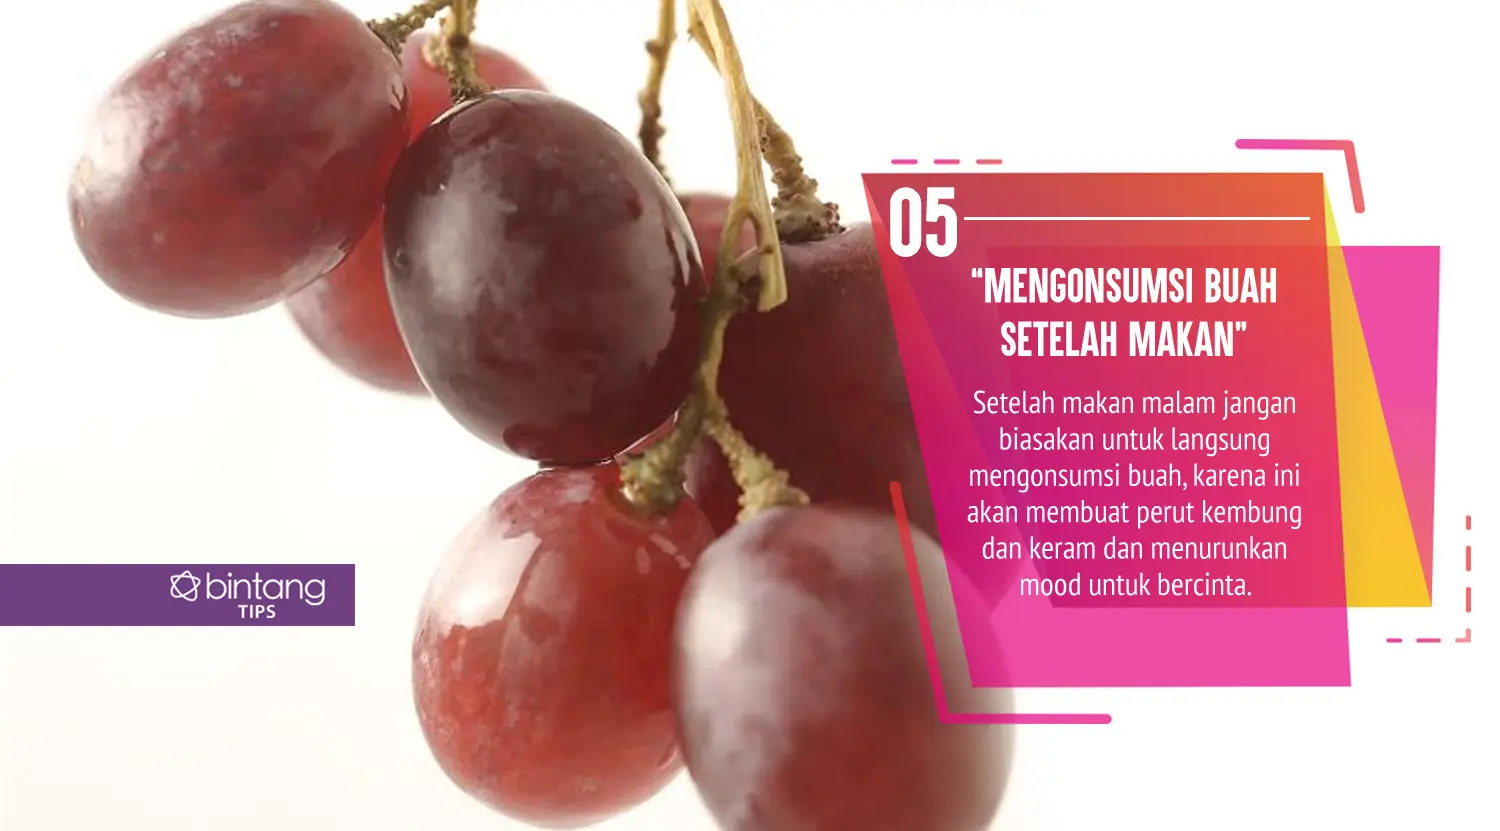 Hindari makanan ini sebelum berhubungan seks. (Foto: Daniel Kampua, Digital Imaging: Nurman Abdul Hakim/Bintang.com)